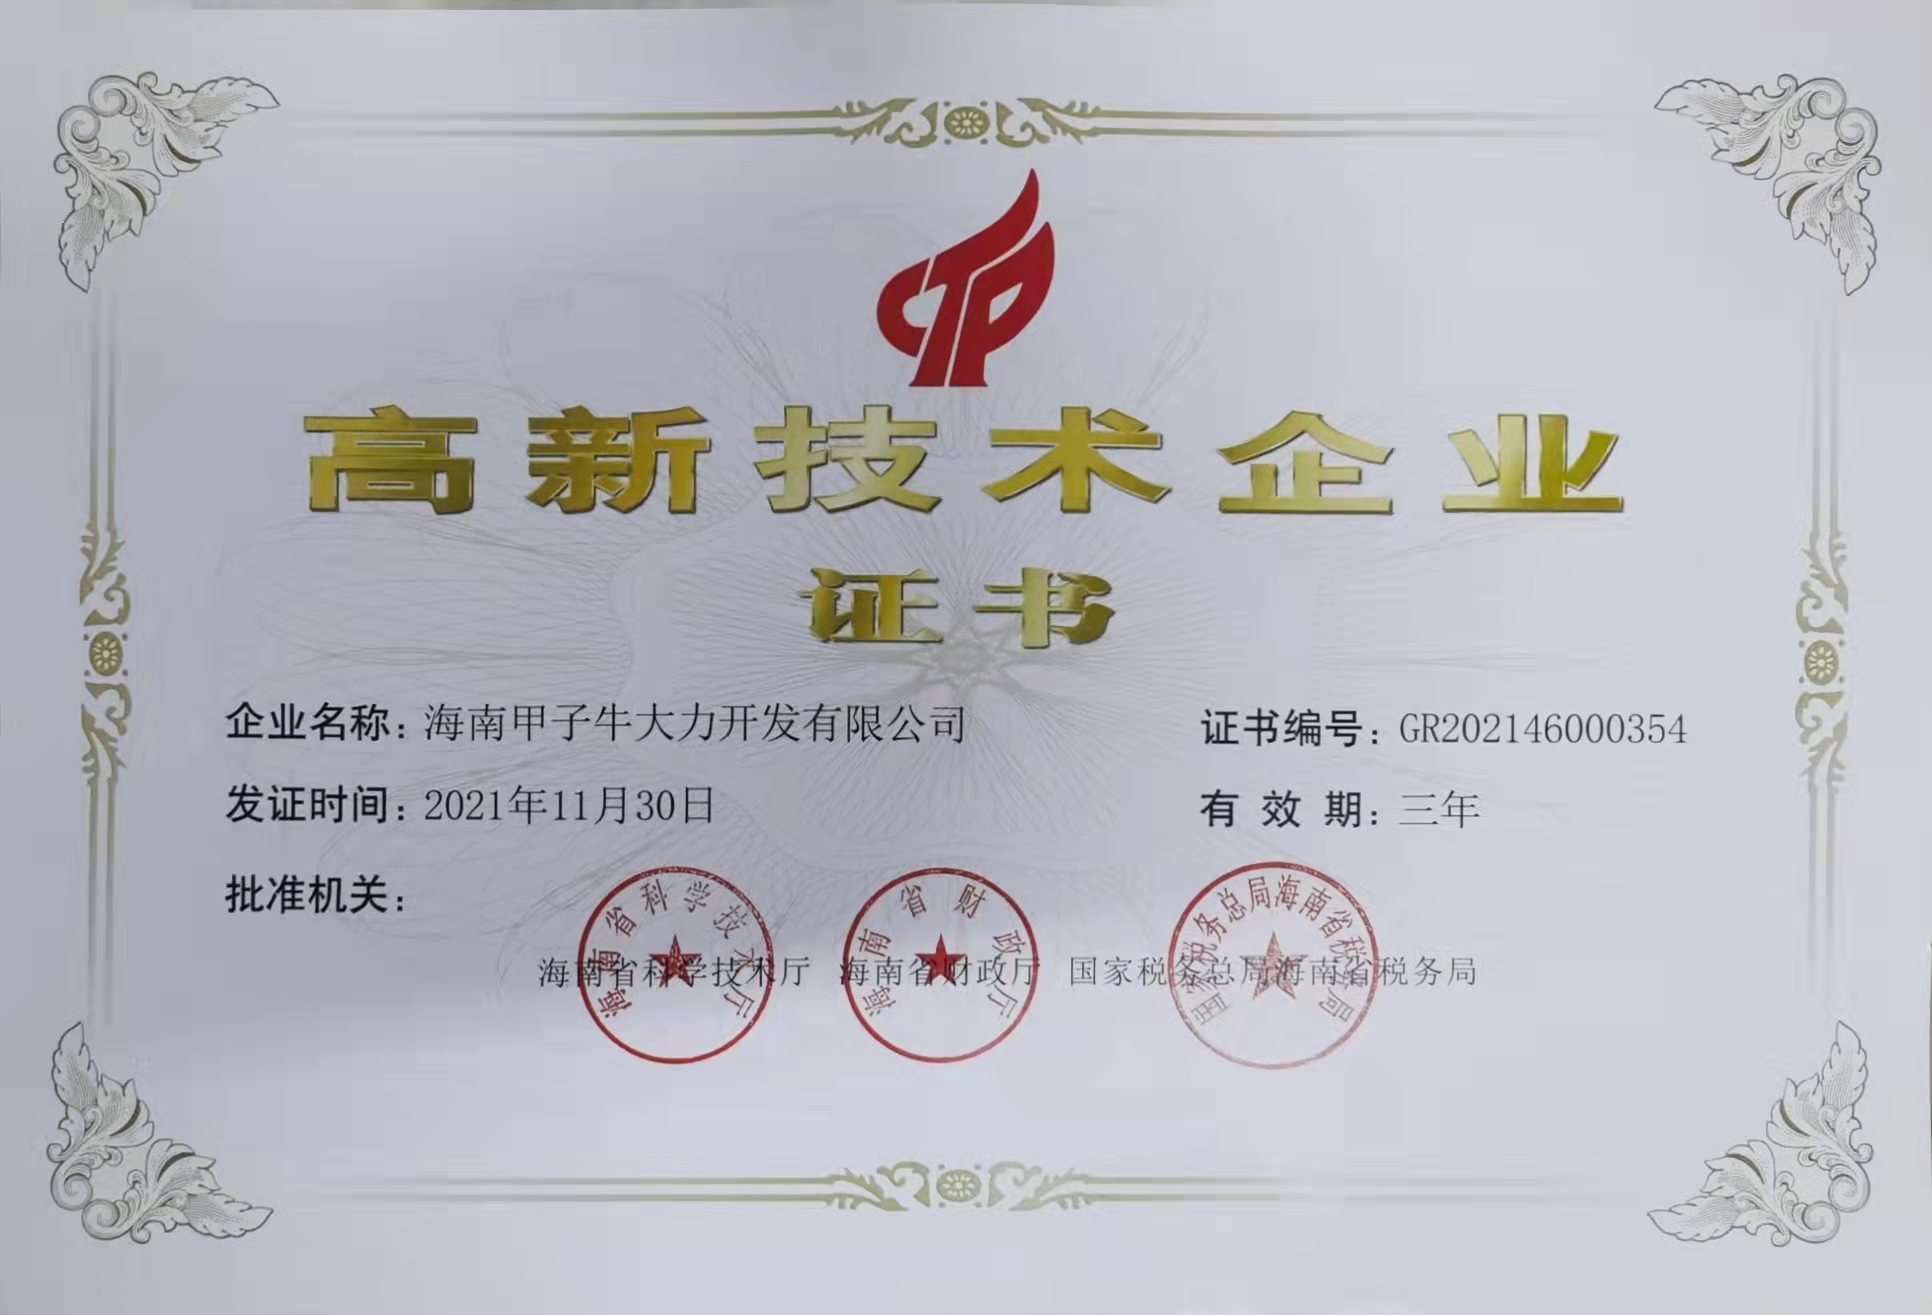 海南甲子牛大力开发有限公司高新技术企业认证证书2024.11.30.jpg